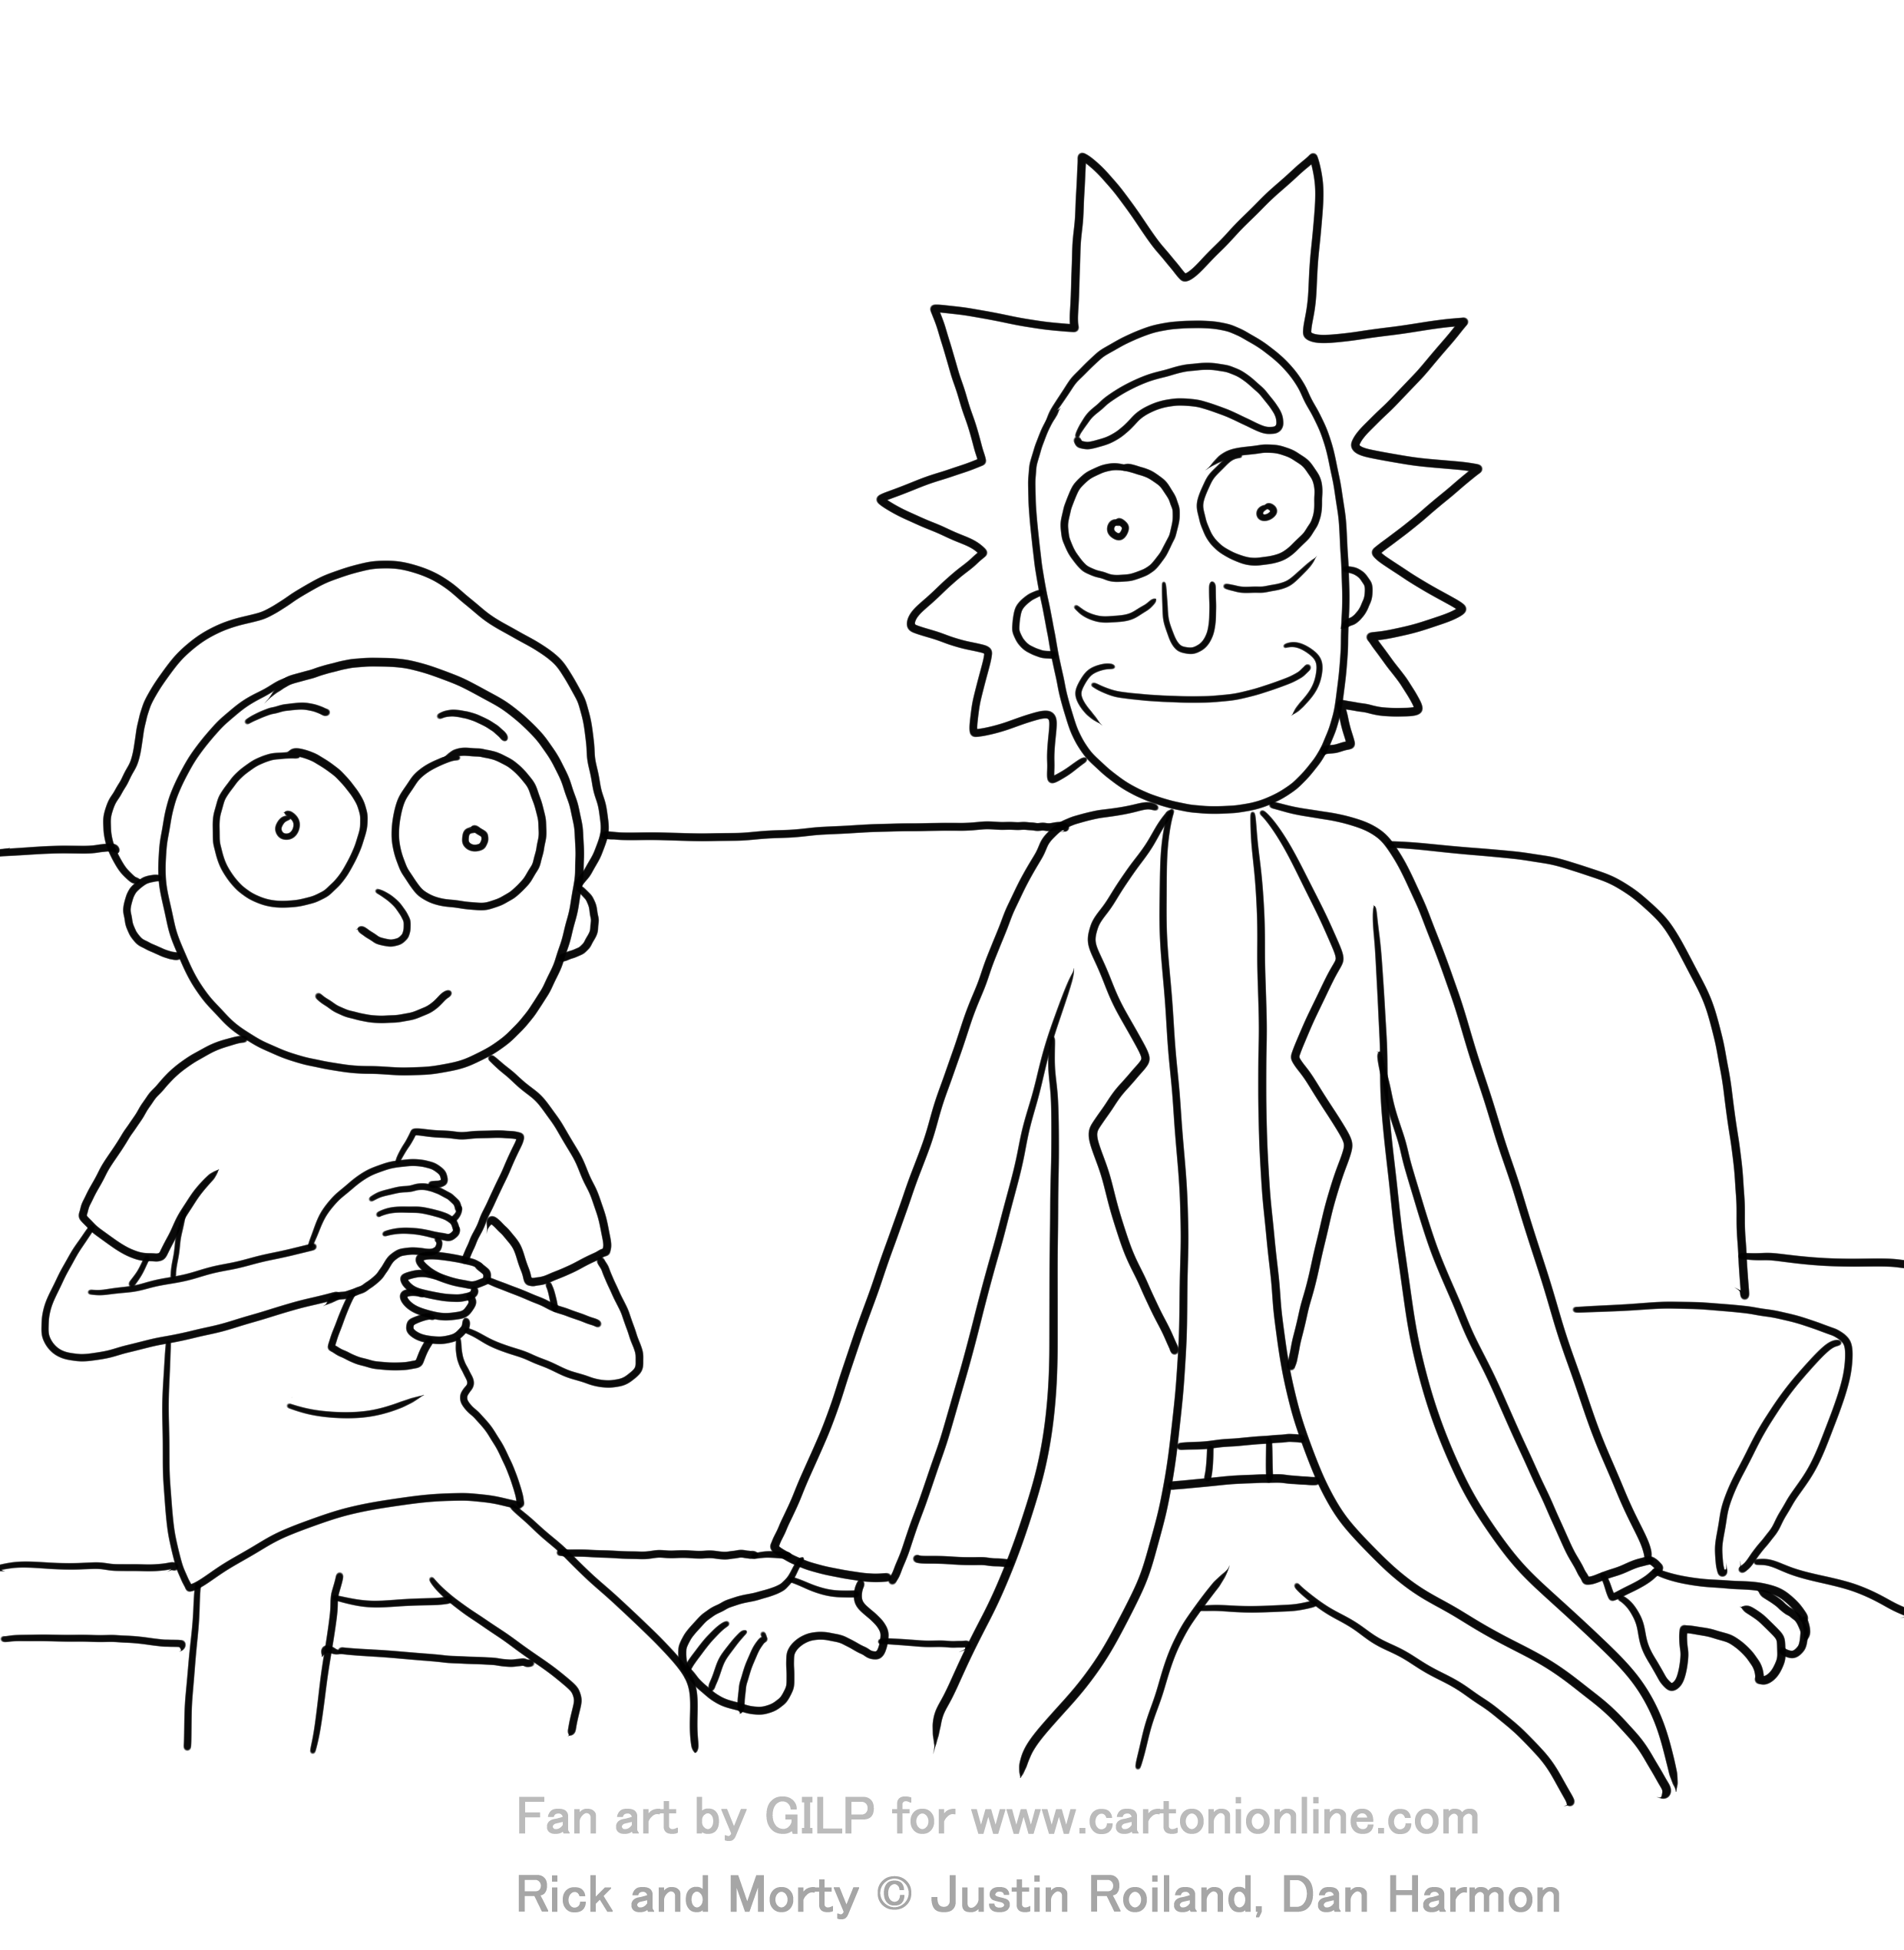 Dibujo de Rick y Morty 03 de Rick y Morty para imprimir y colorear